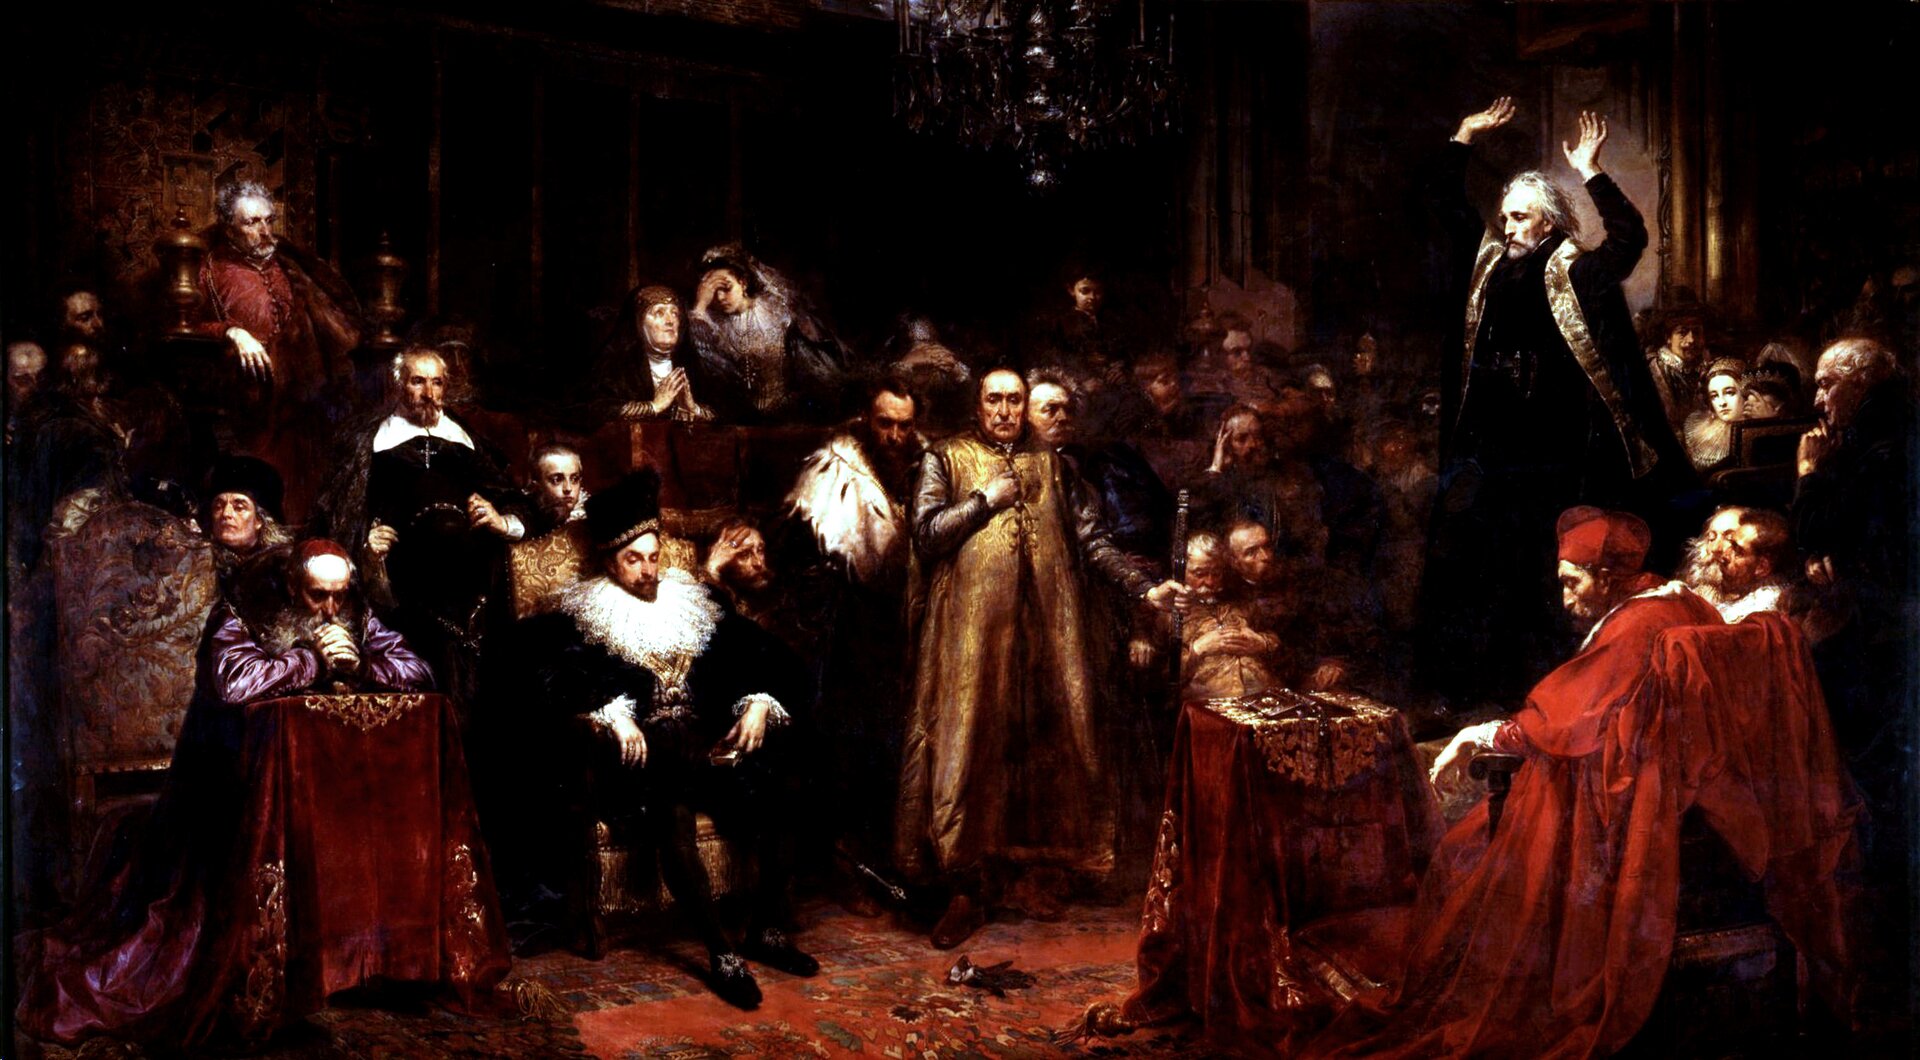 Ilustracja przedstawia obraz „Kazanie Skargi" autorstwa Jana Matejko. Obraz ukazuje grupę elegancko odzianych mężczyzn podczas kazania.